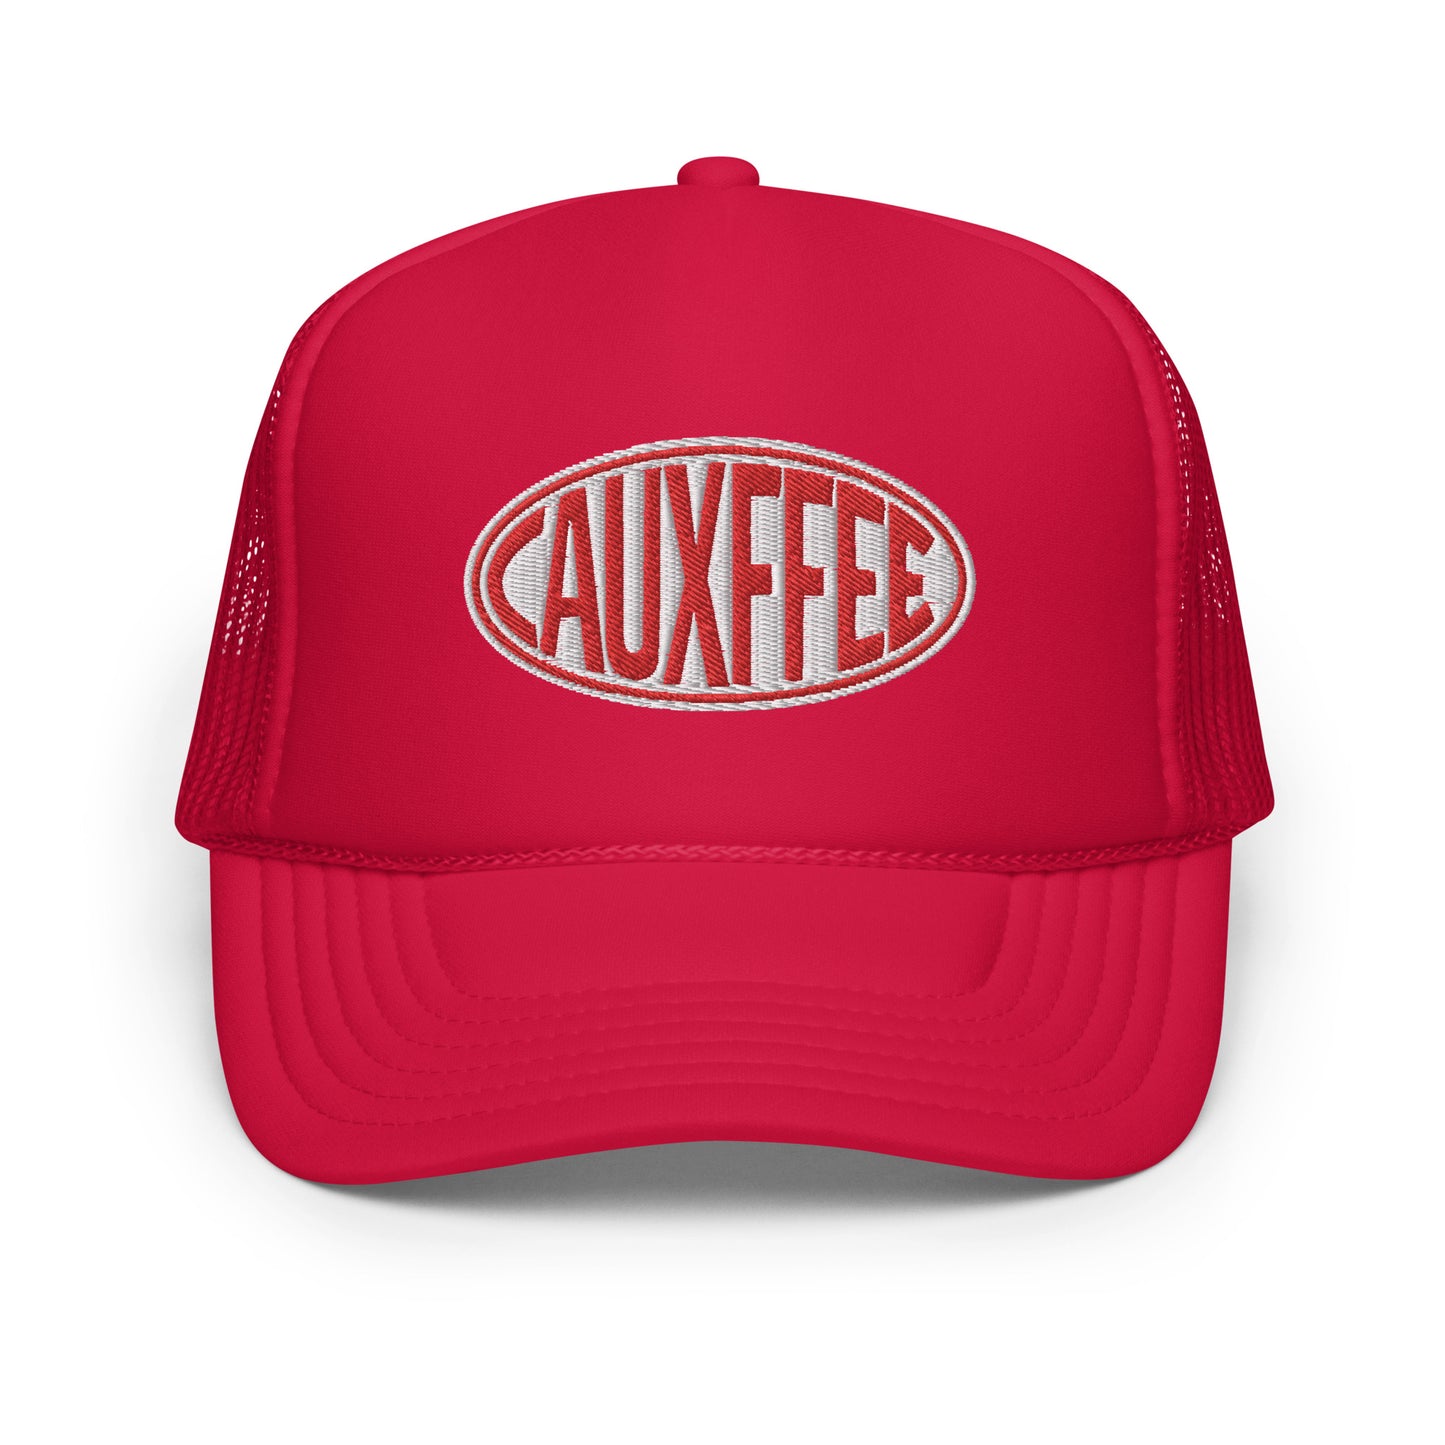 Cauxffee Foam Trucker Hat